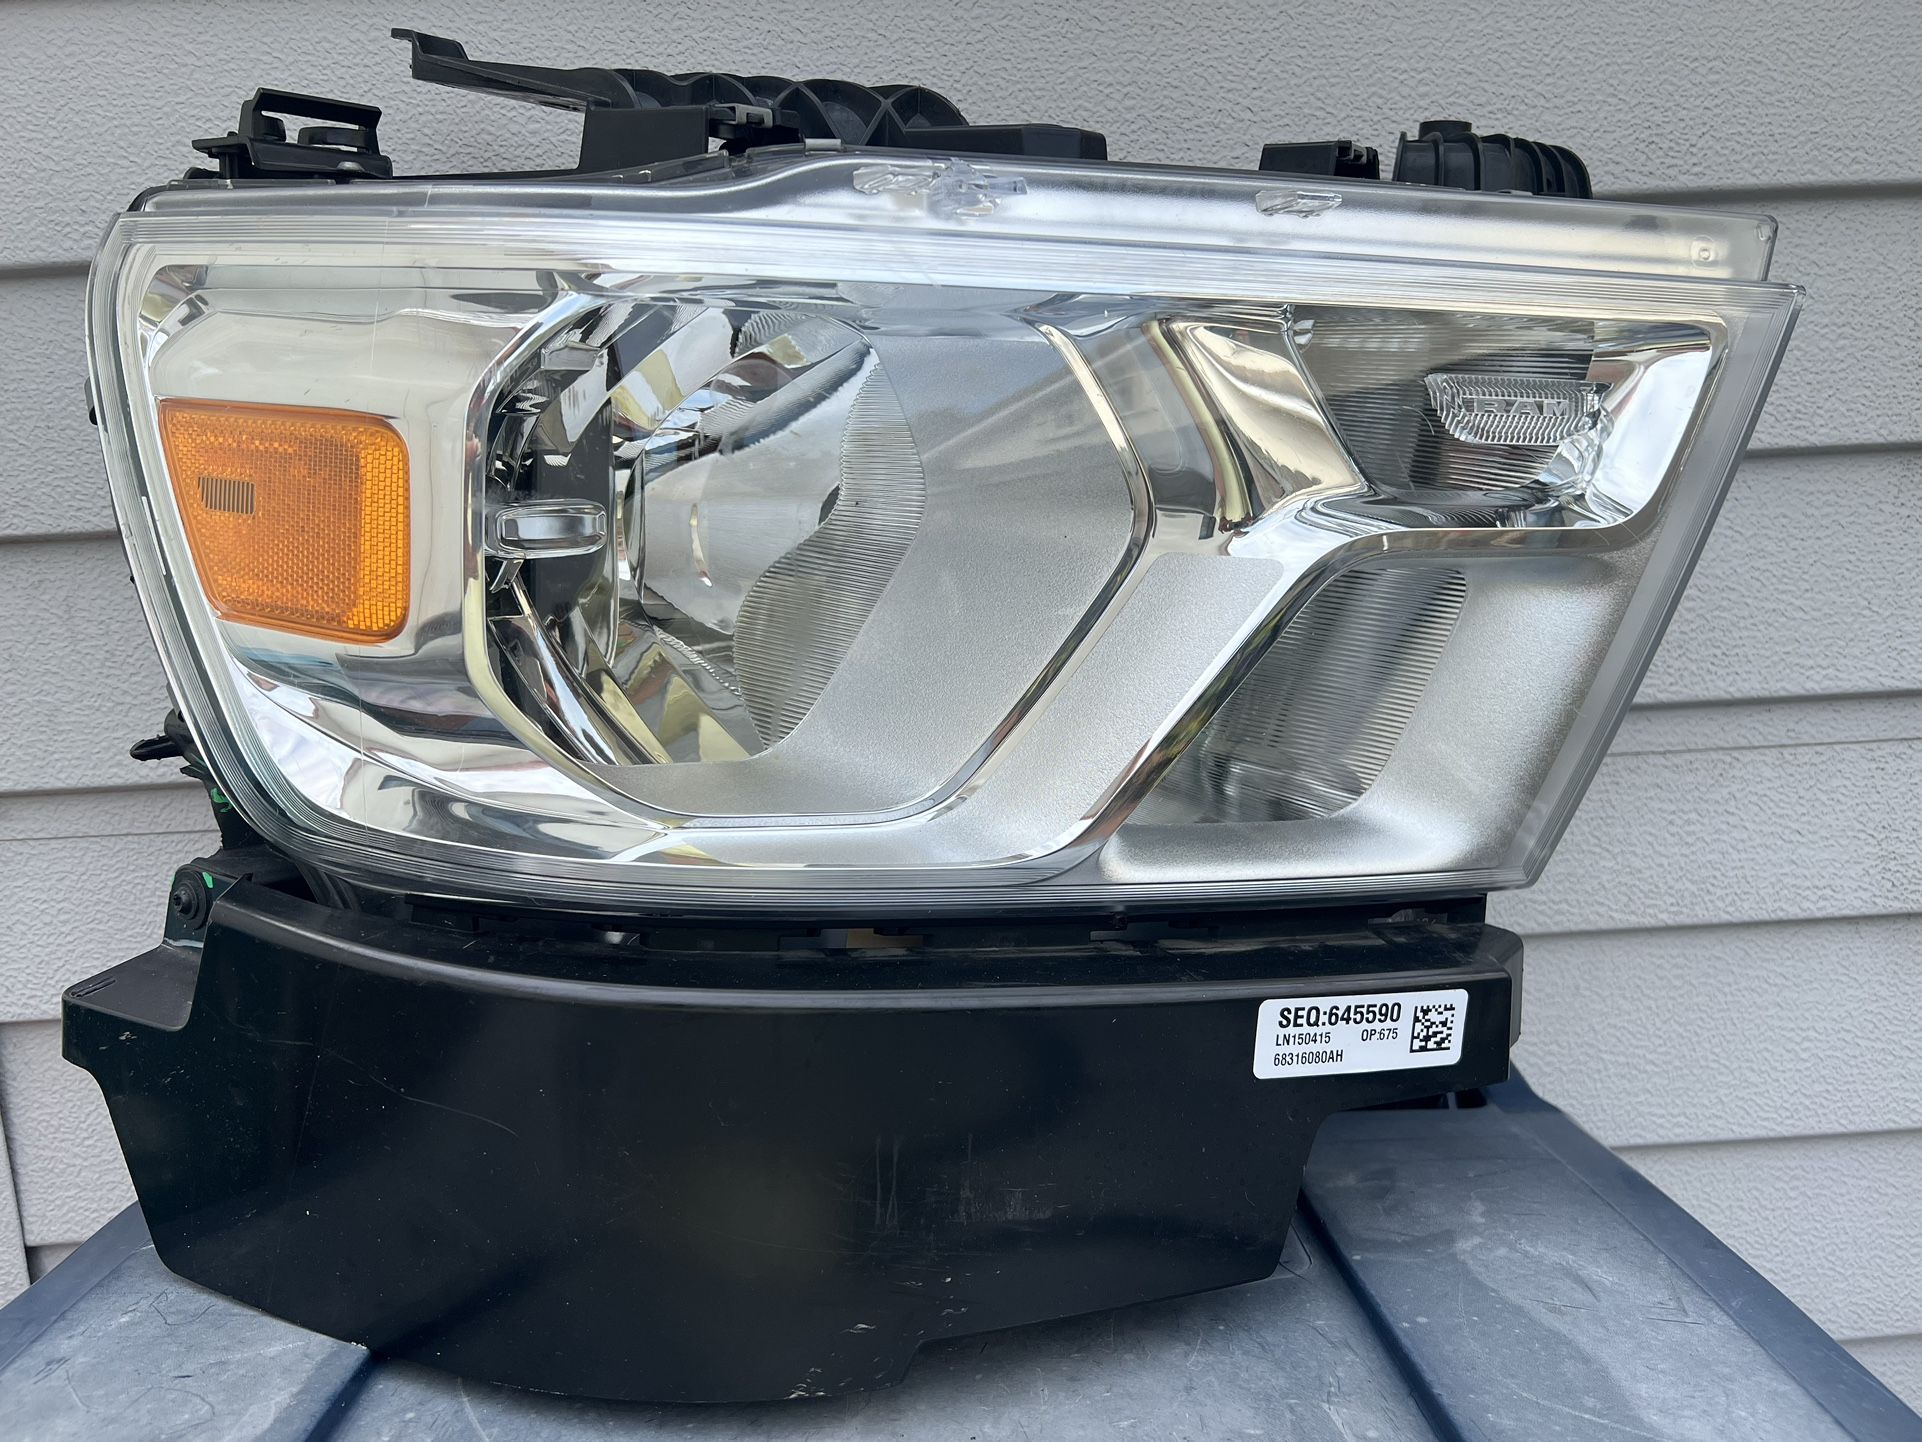 RAM 1500 Long Horn 2019 Front Right Headlight